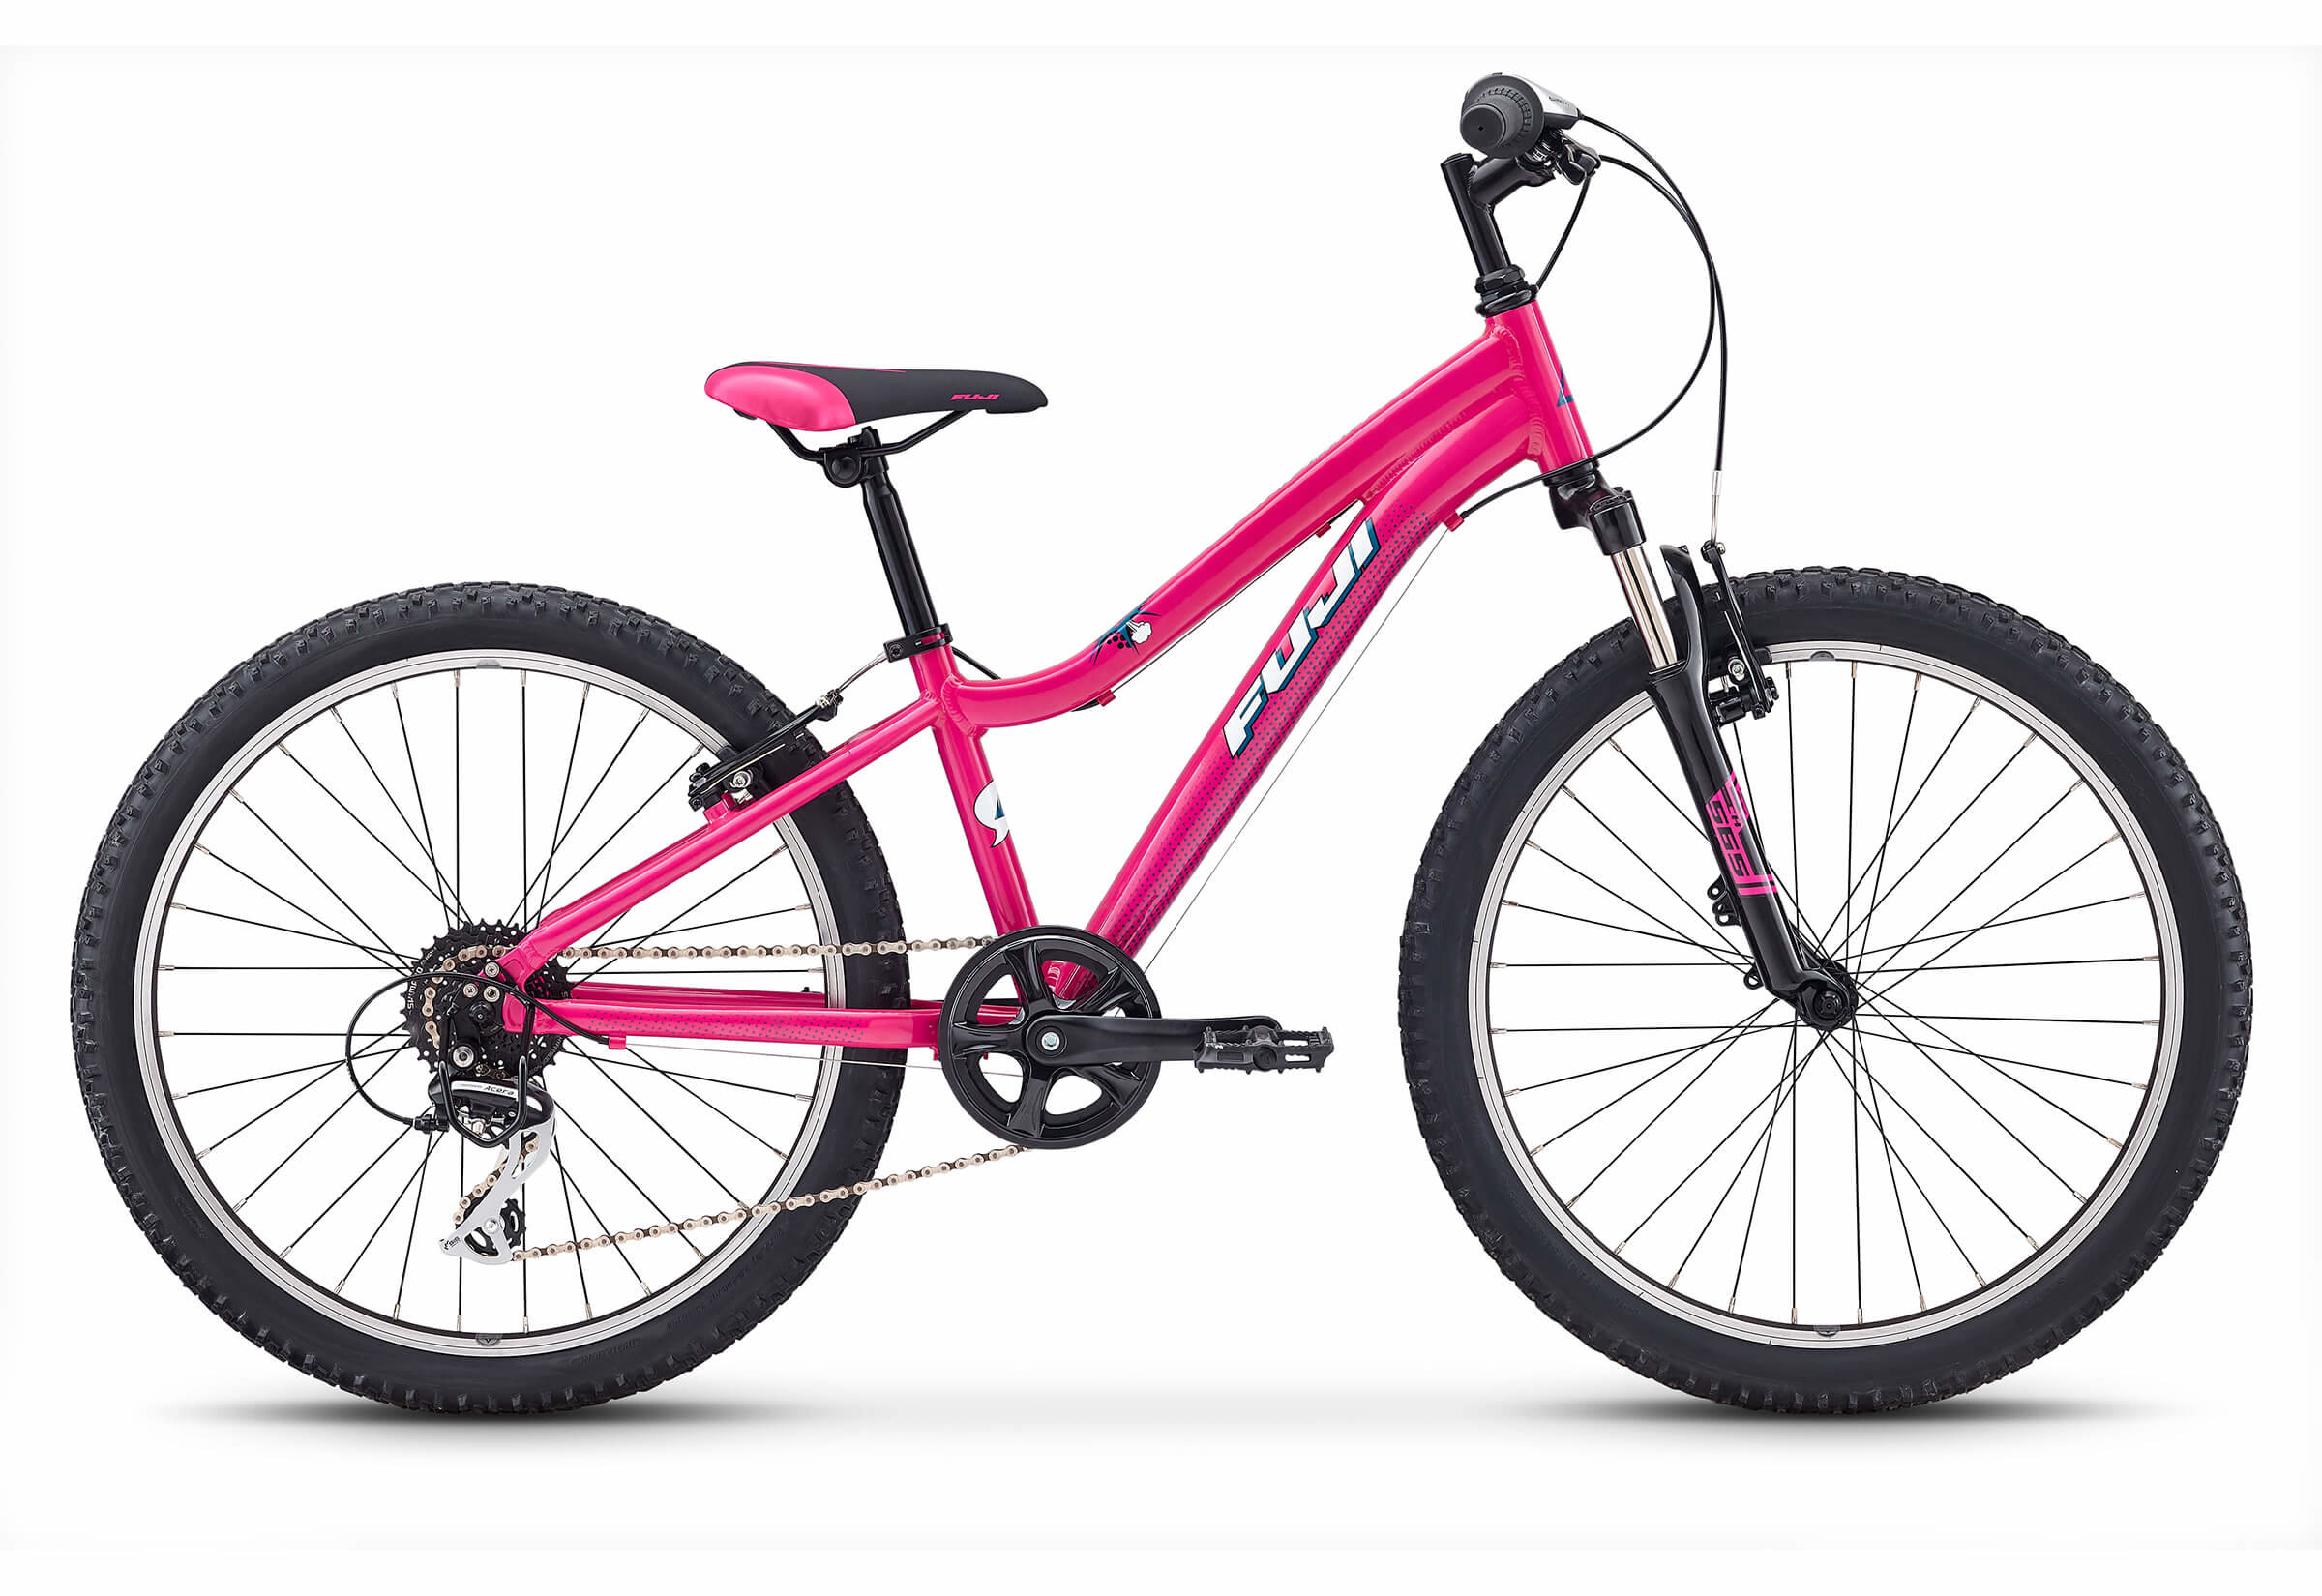 Велосипед 24 розовый. Велосипед Fuji Dynamite. Велосипед Foxx 24" Salsa розовый, сталь, размер 12". Foxx Salsa 24. Велосипед Foxx Bike 24.